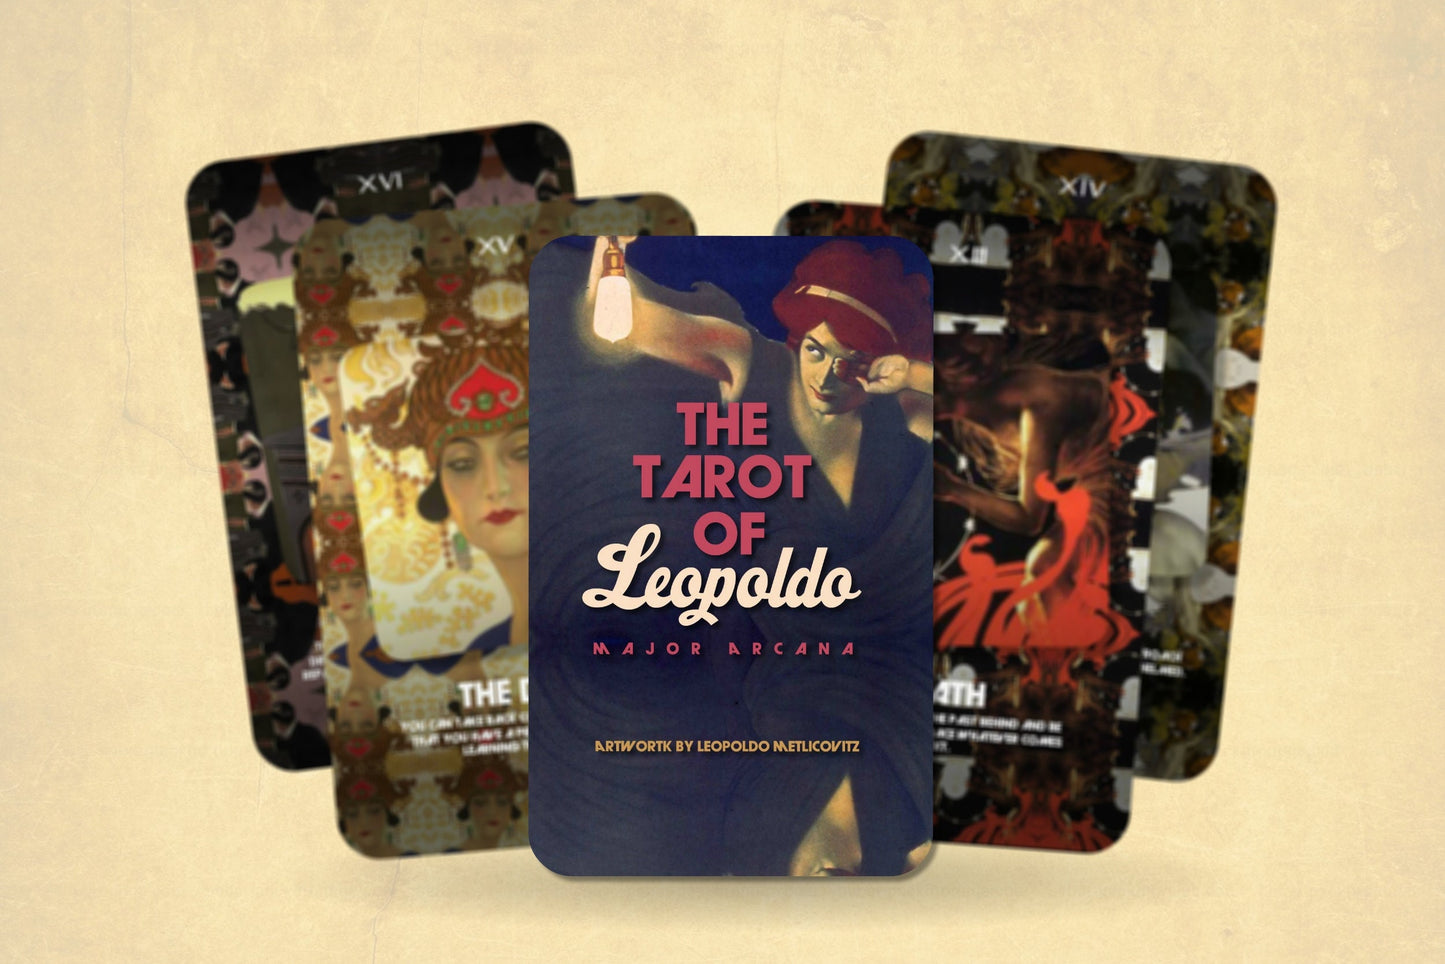 The Tarot of Leopoldo - Major Arcana